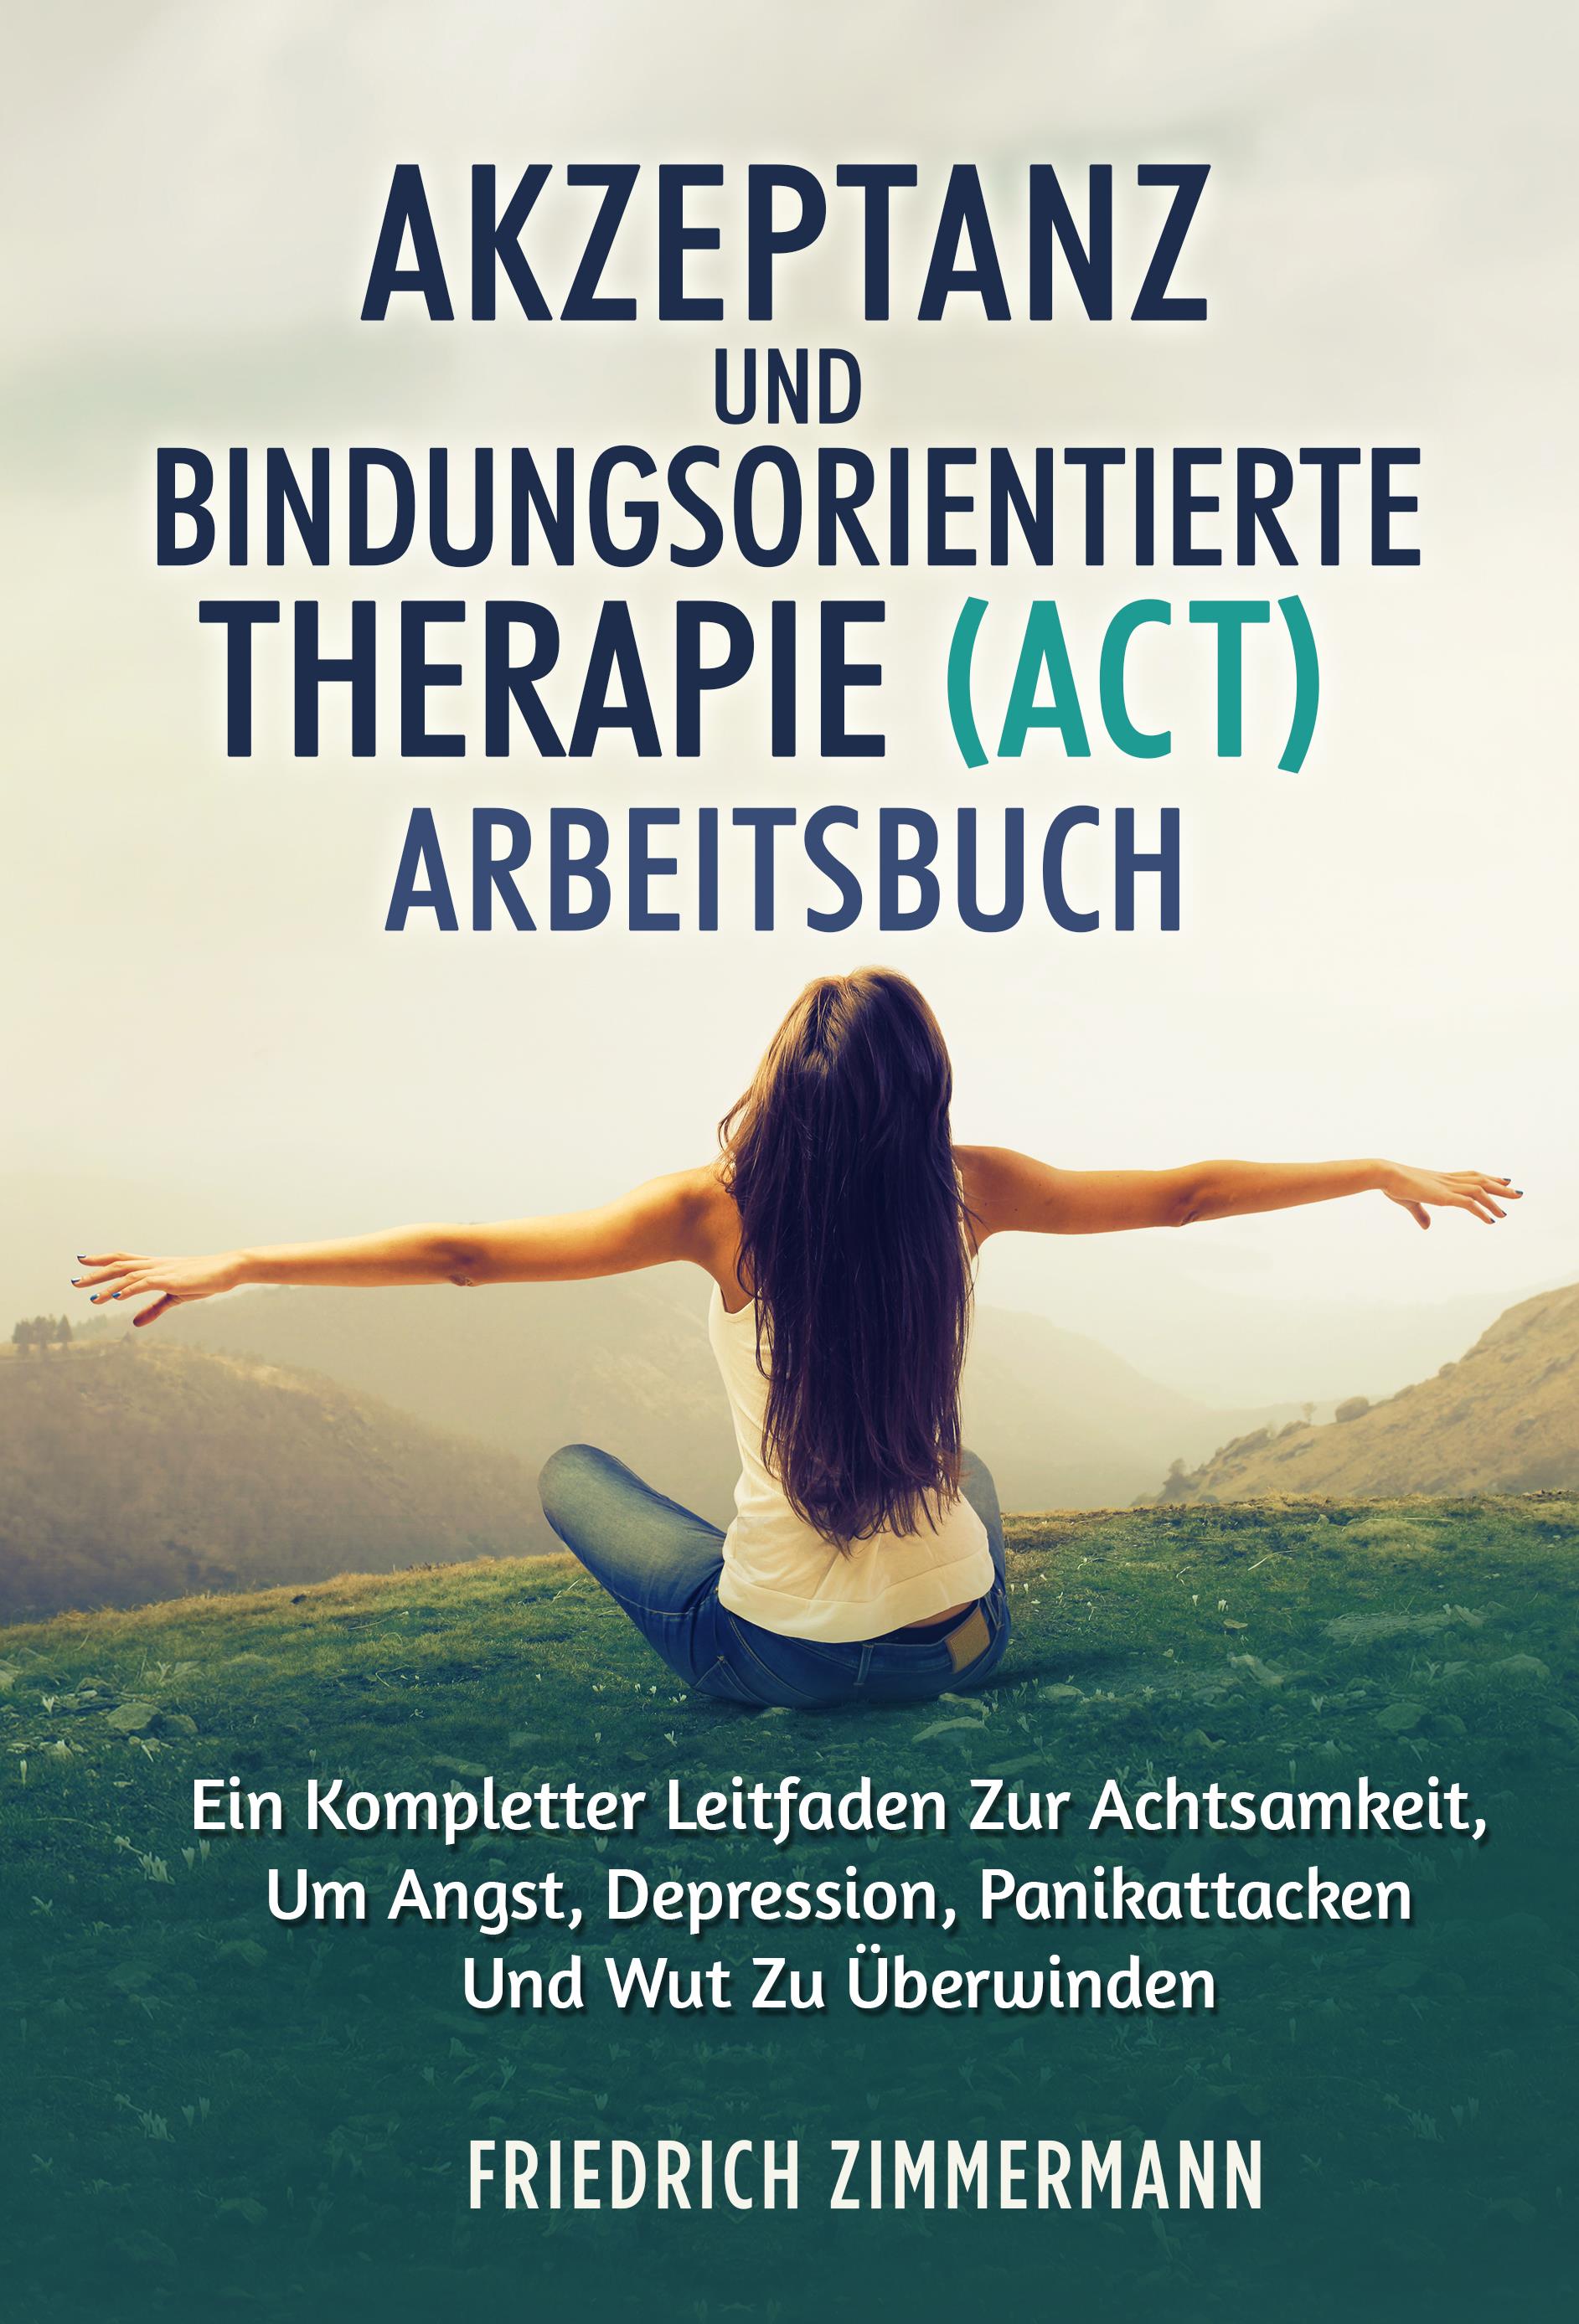 Akzeptanz und bindungsorientierte therapie (ACT) ARBEITSBUCH